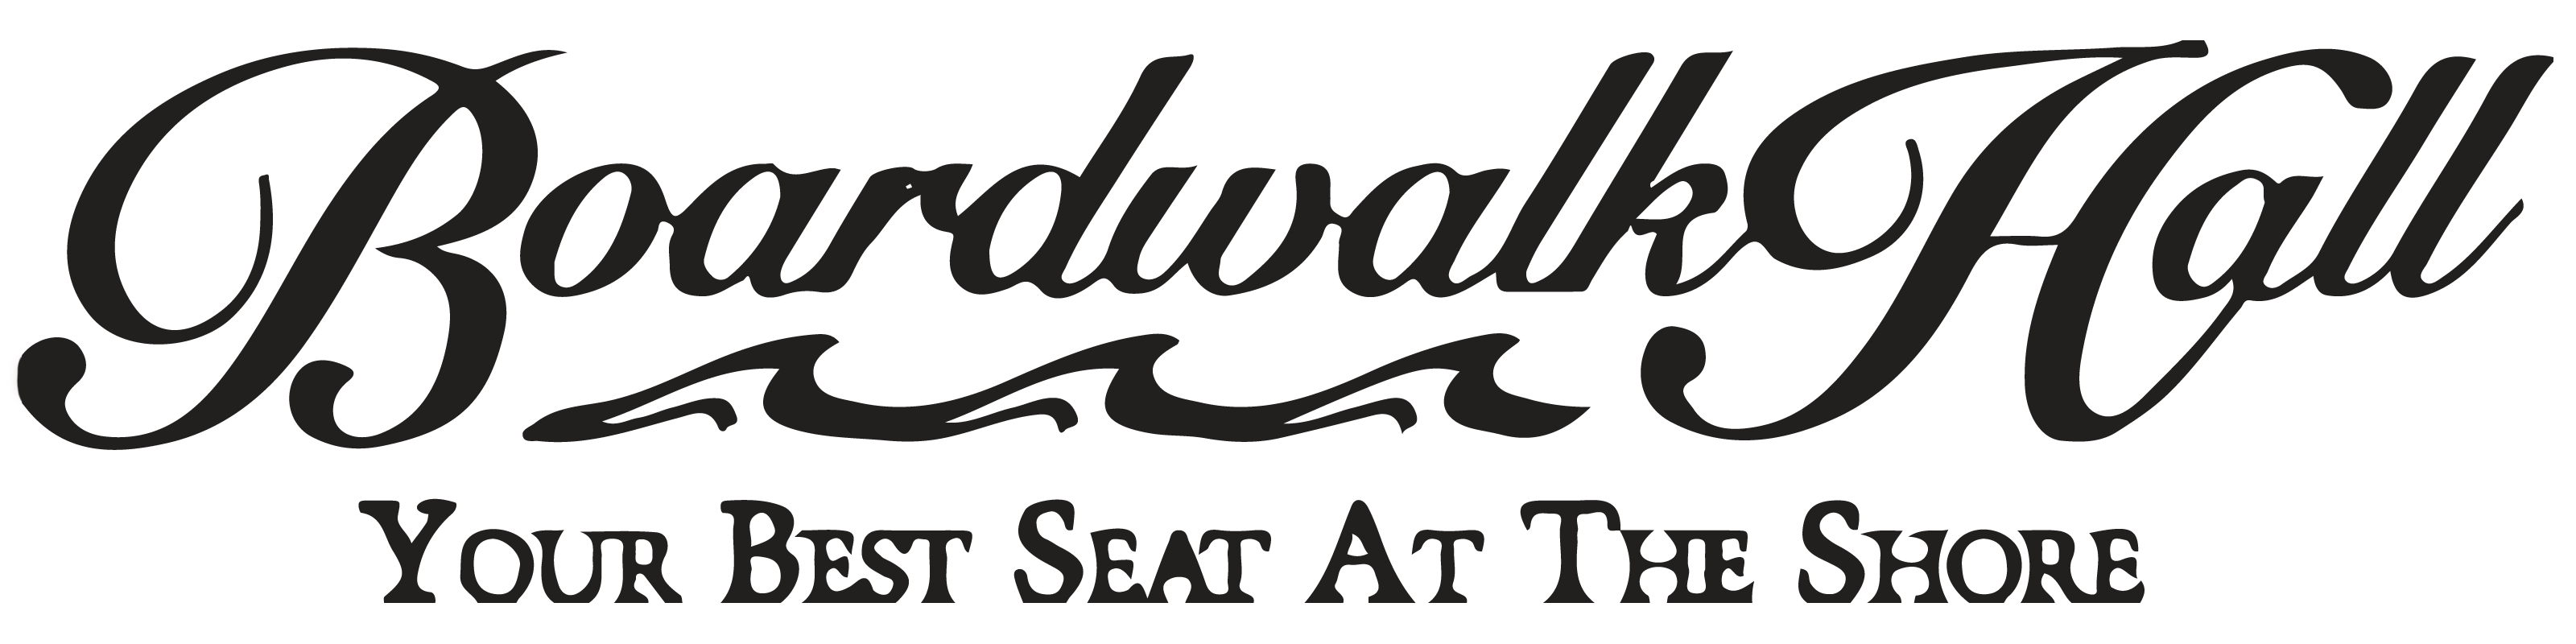 boardwalk hall  logo